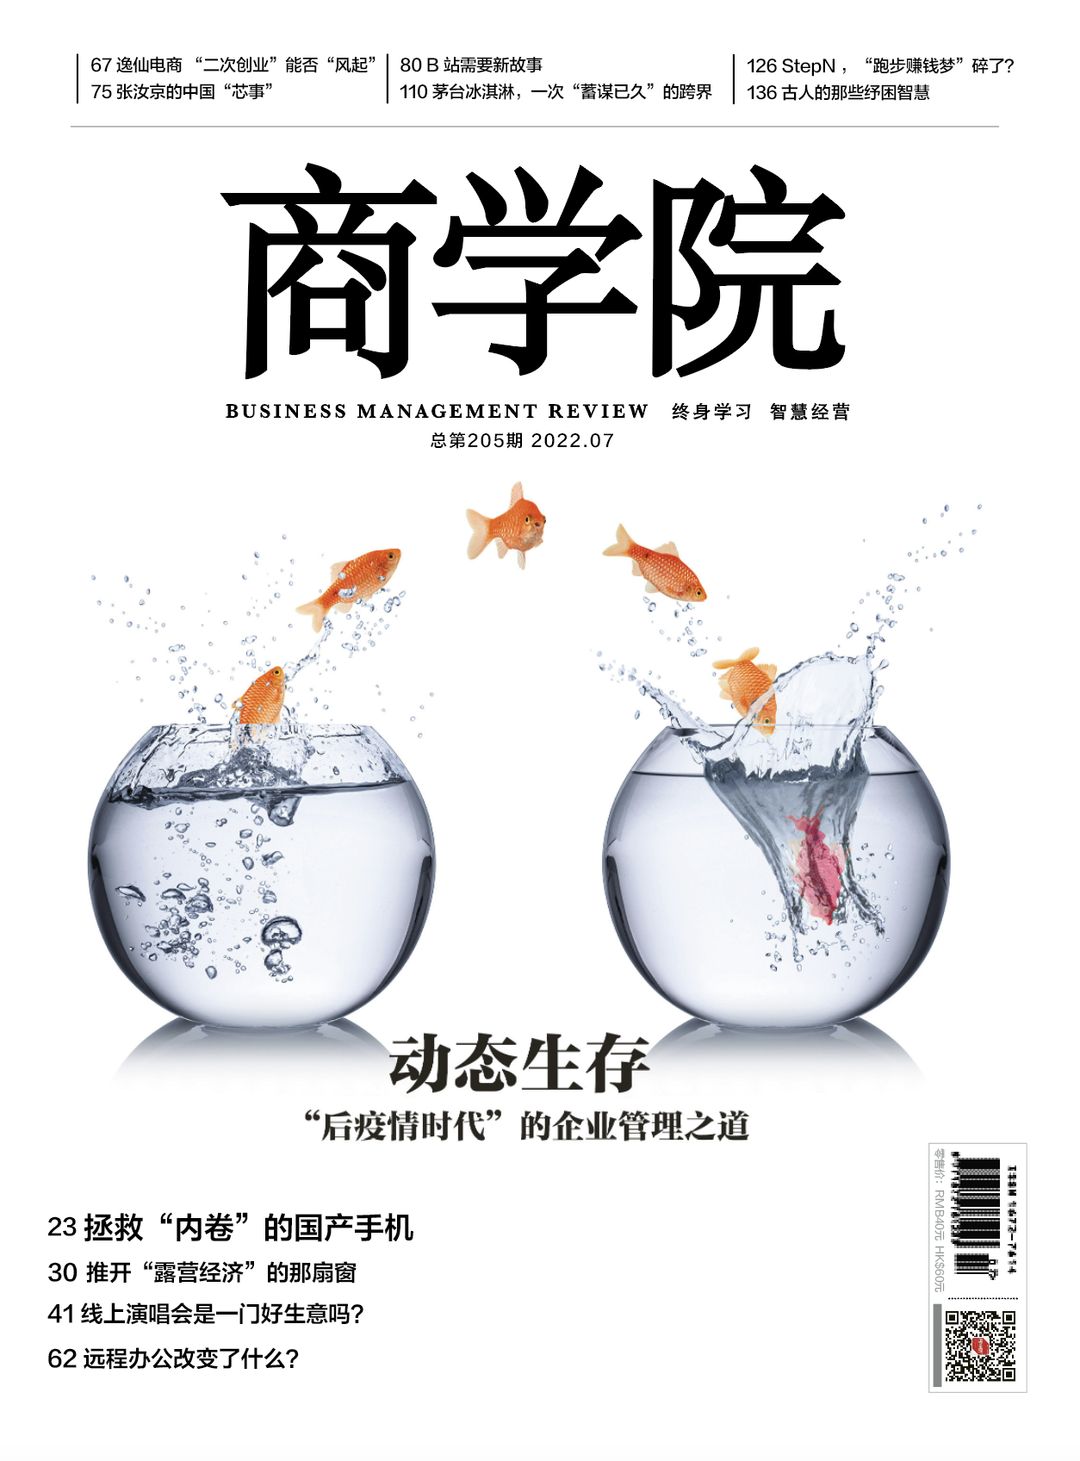 新刊热卖 | 商学院杂志2022年7月刊：动态生存——“后疫情时代”的企业管理之道|北大